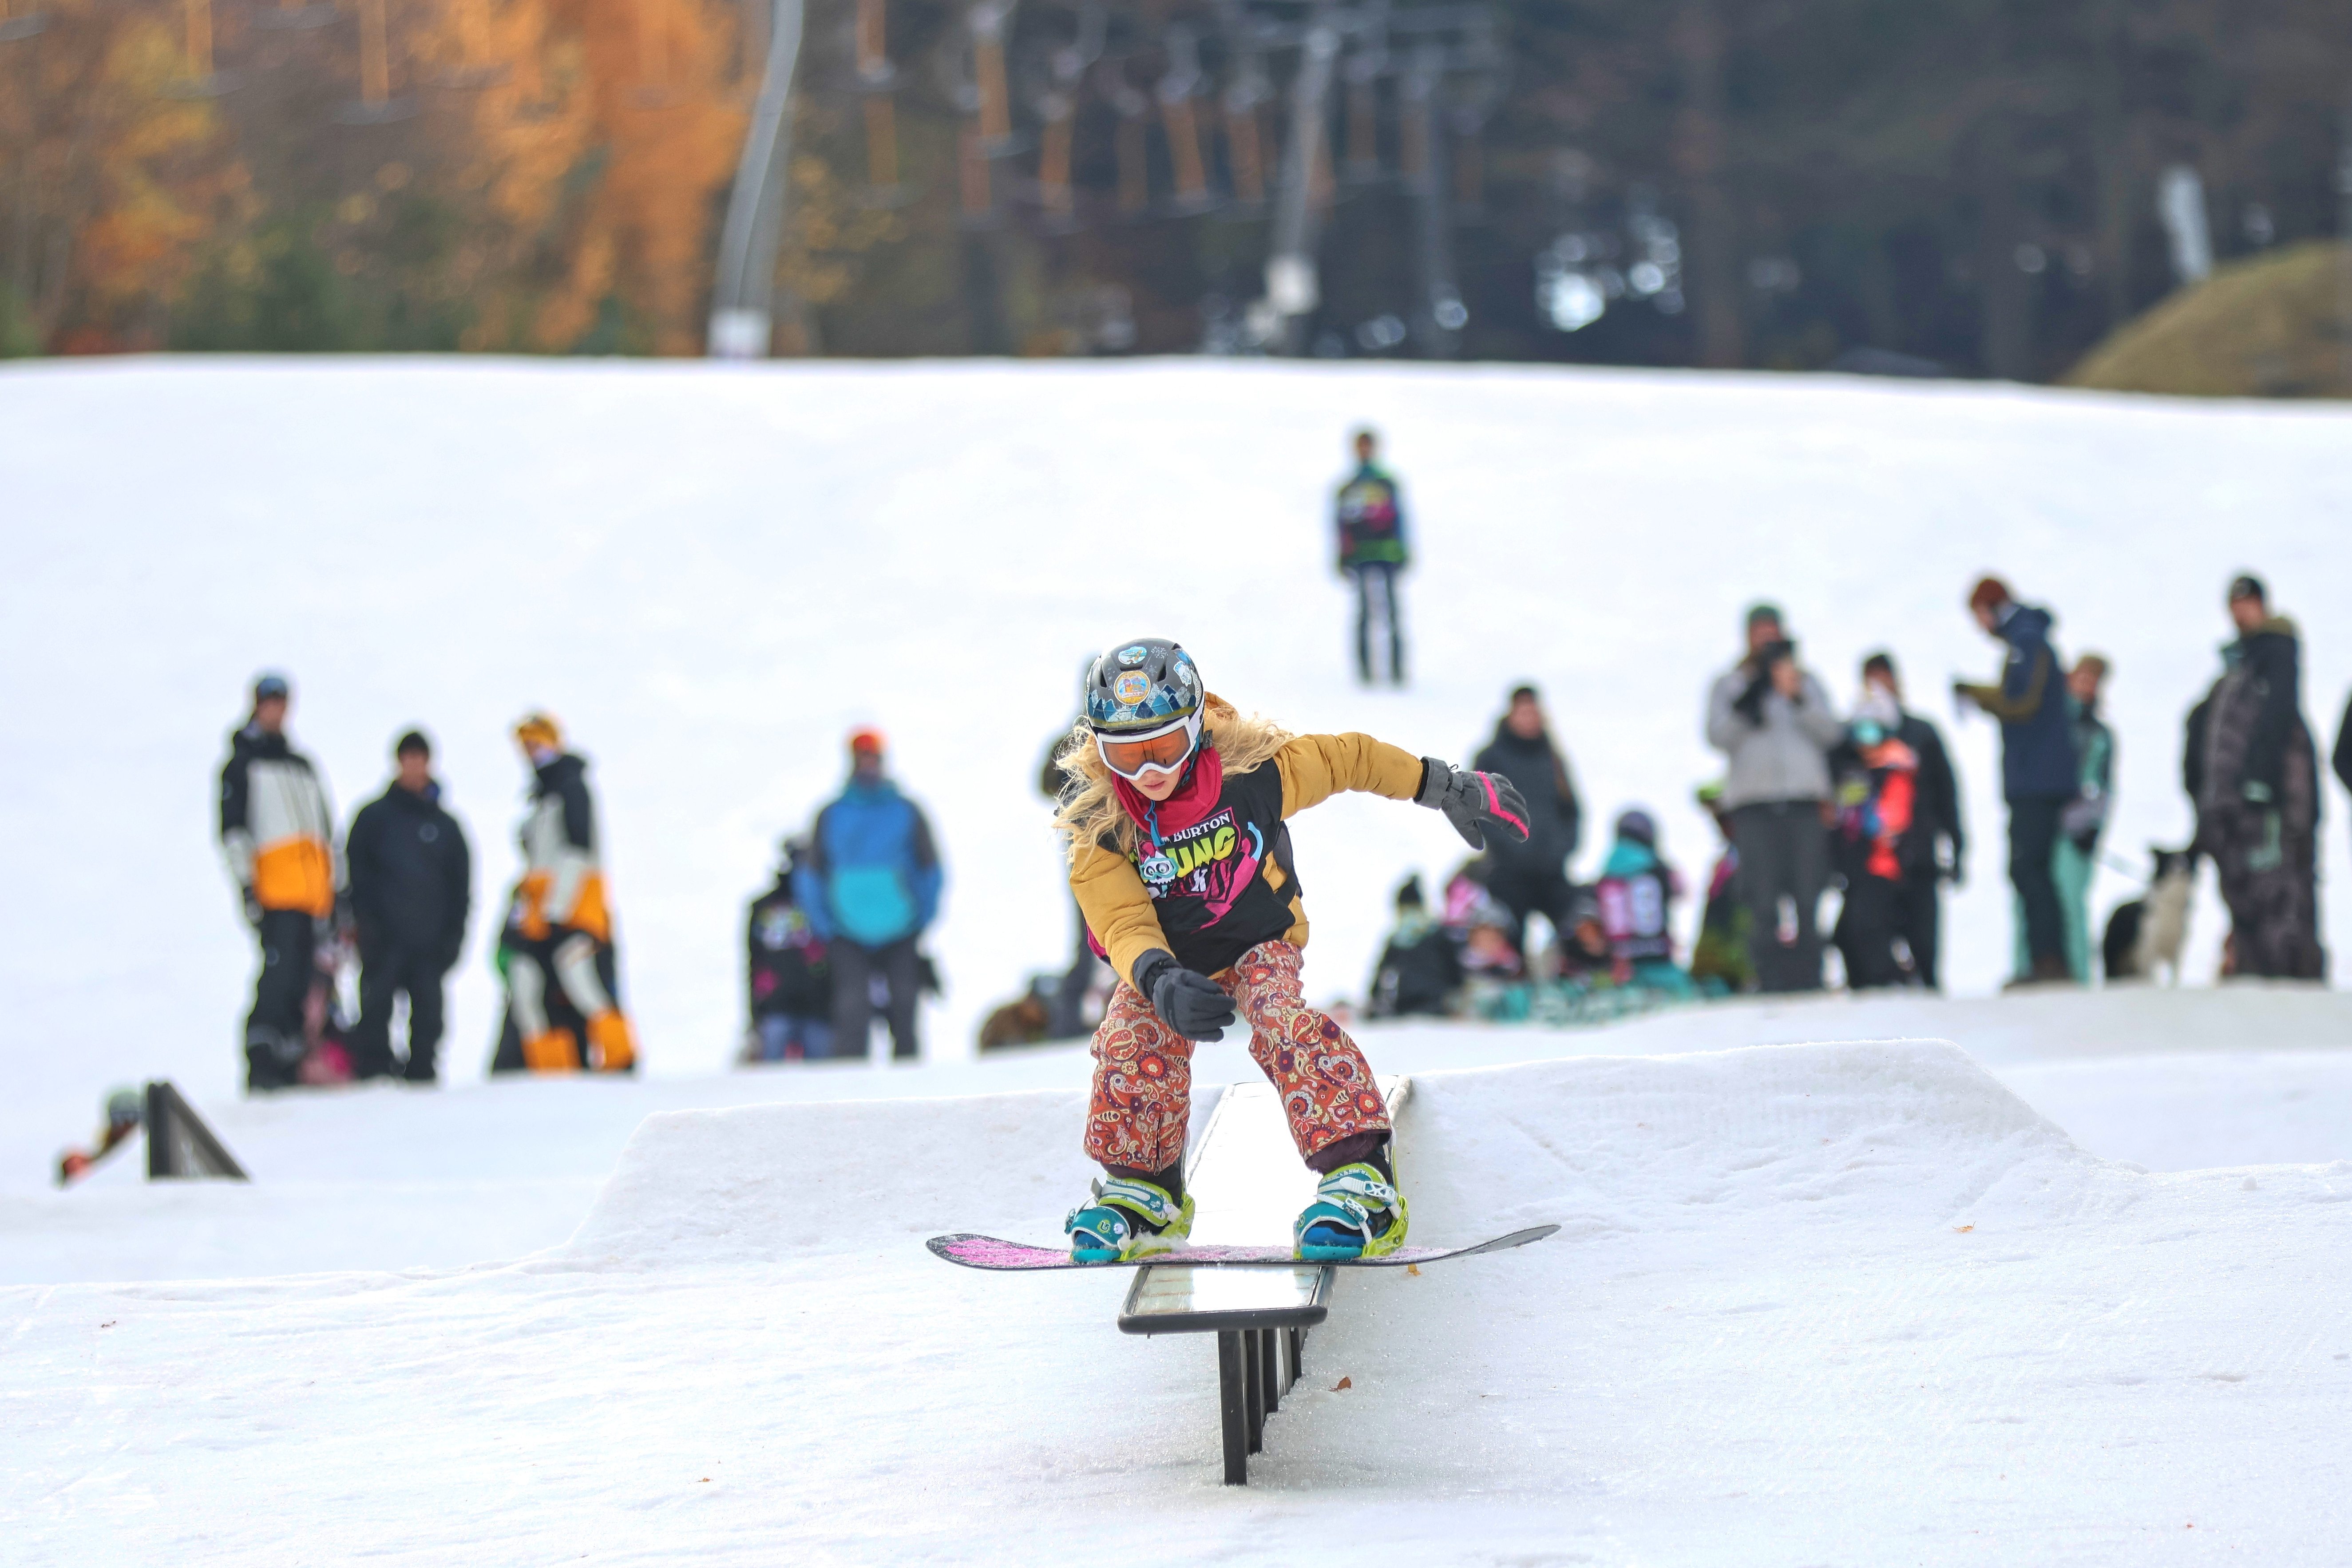 Družstvo snowboardistů našeho klubu úspěšně zahájilo závodní sezónu